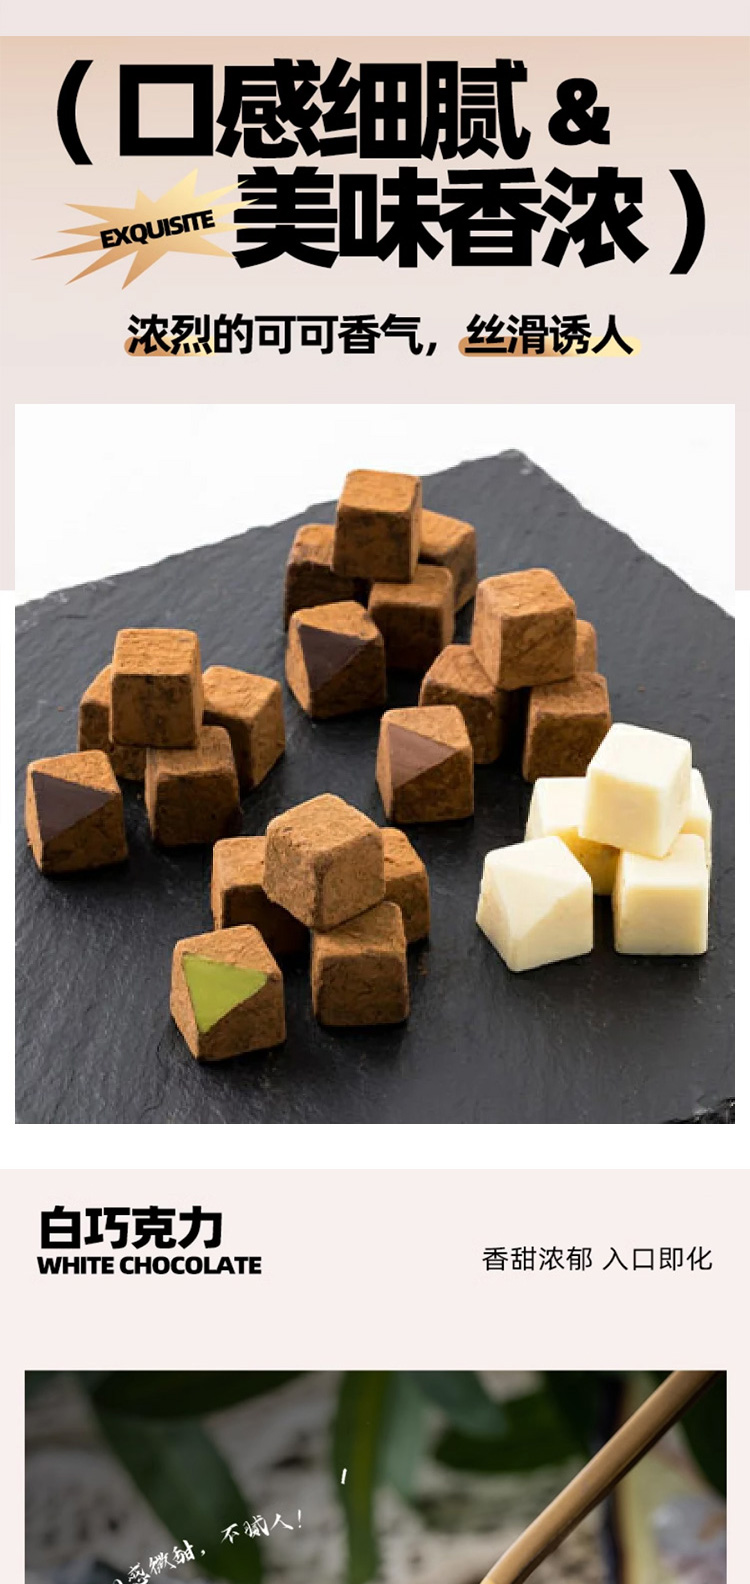 【日本直郵】日本TAKAOKA高岡 小紅書推薦 高崗巧克力 生巧克力 草莓風味生巧克力 140g